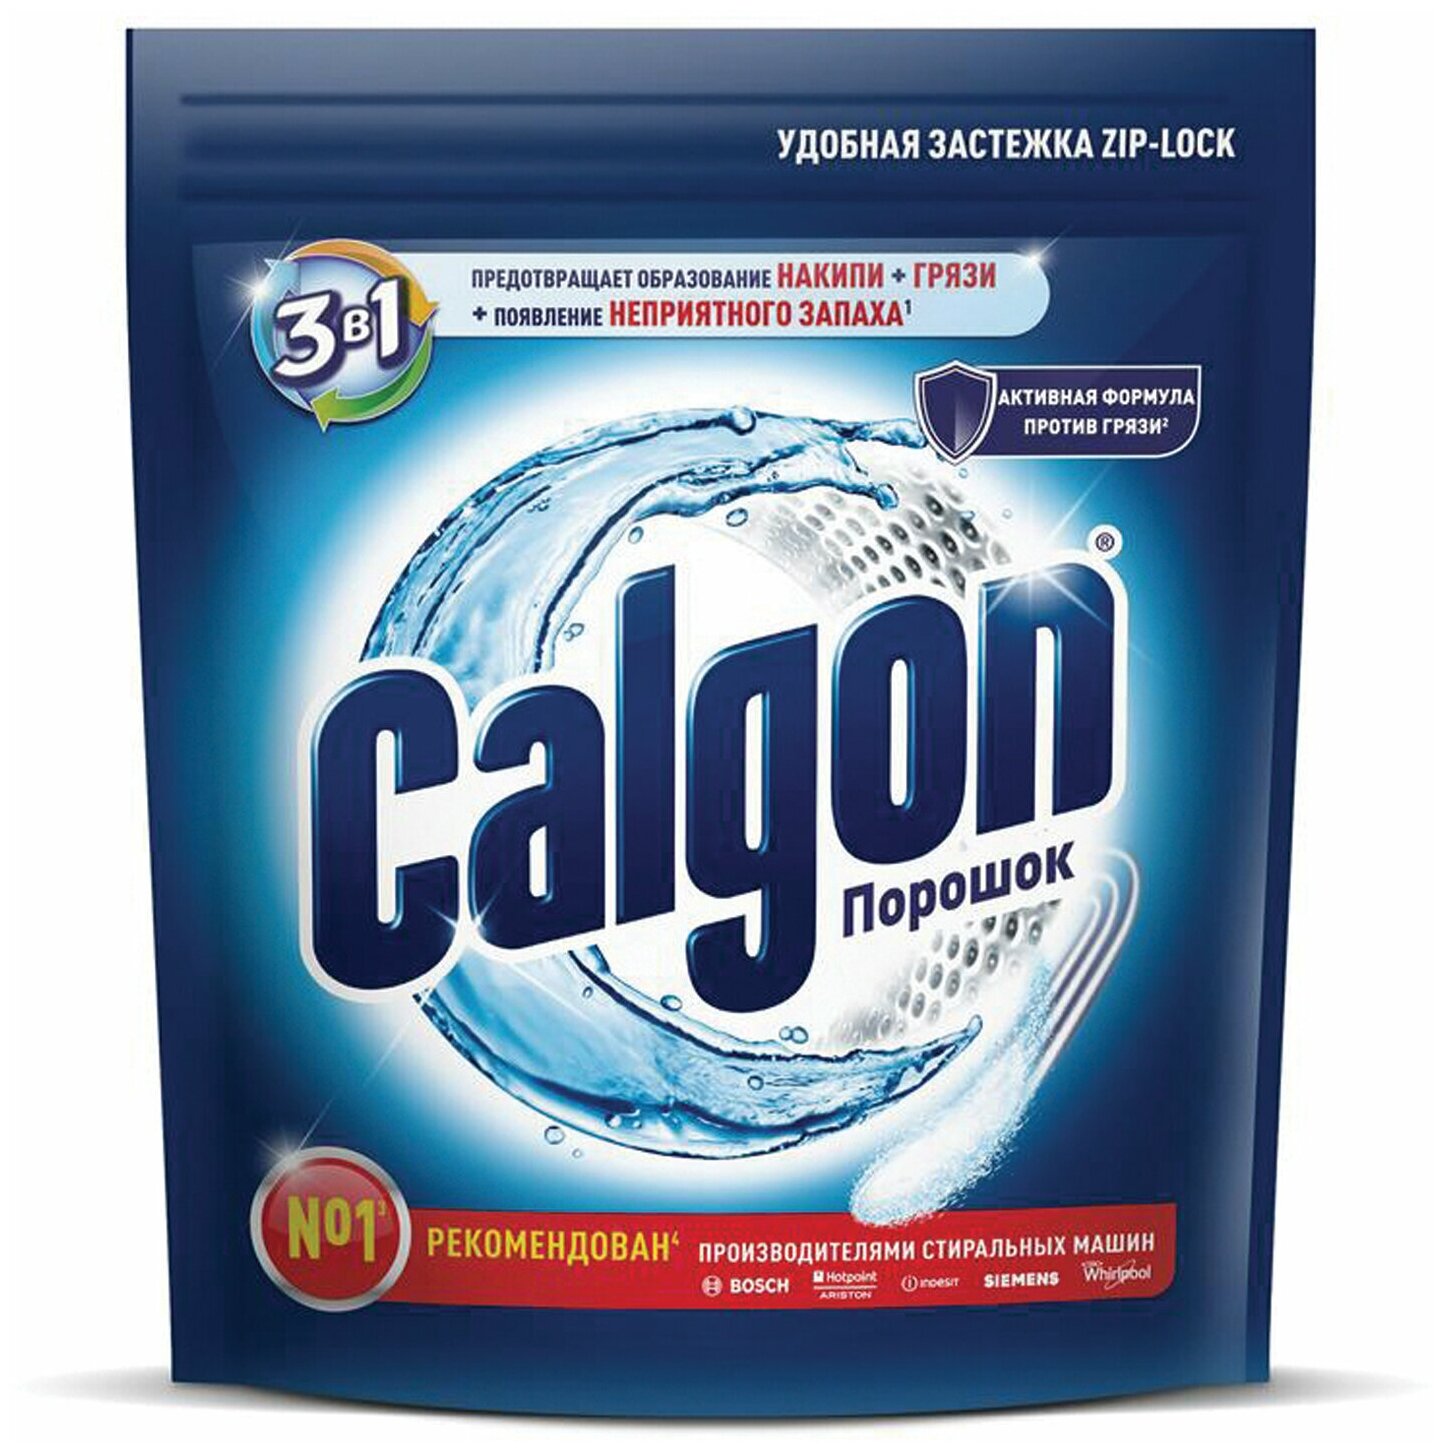 Средство для смягчения воды и удаления накипи в стиральных машинах 750 г, CALGON (Калгон), 3184456 2 шт .